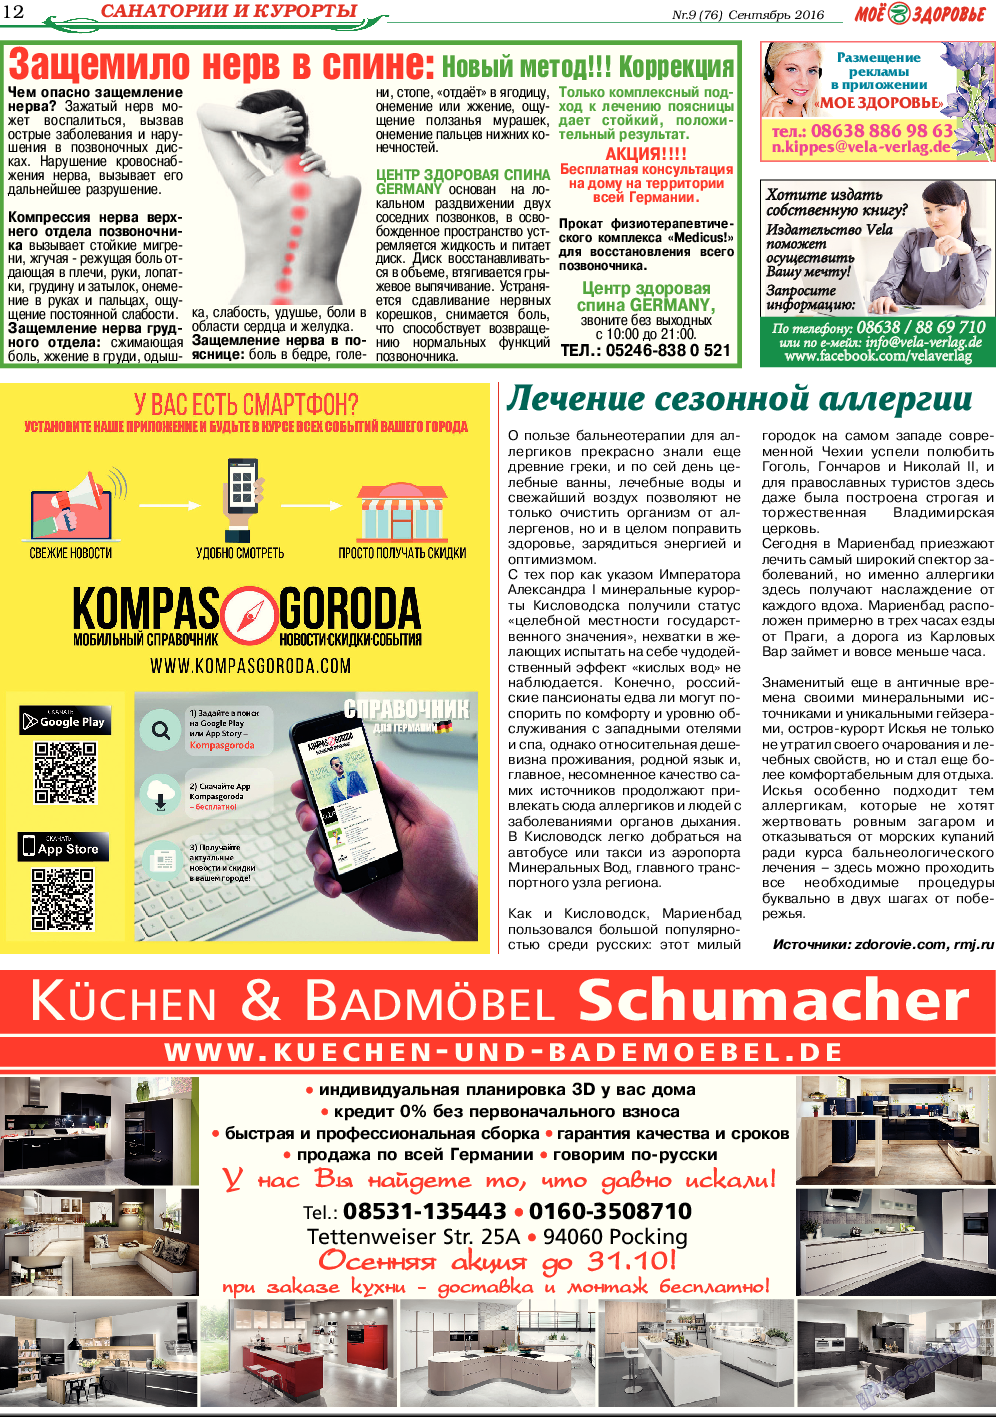 Кругозор, газета. 2016 №9 стр.12